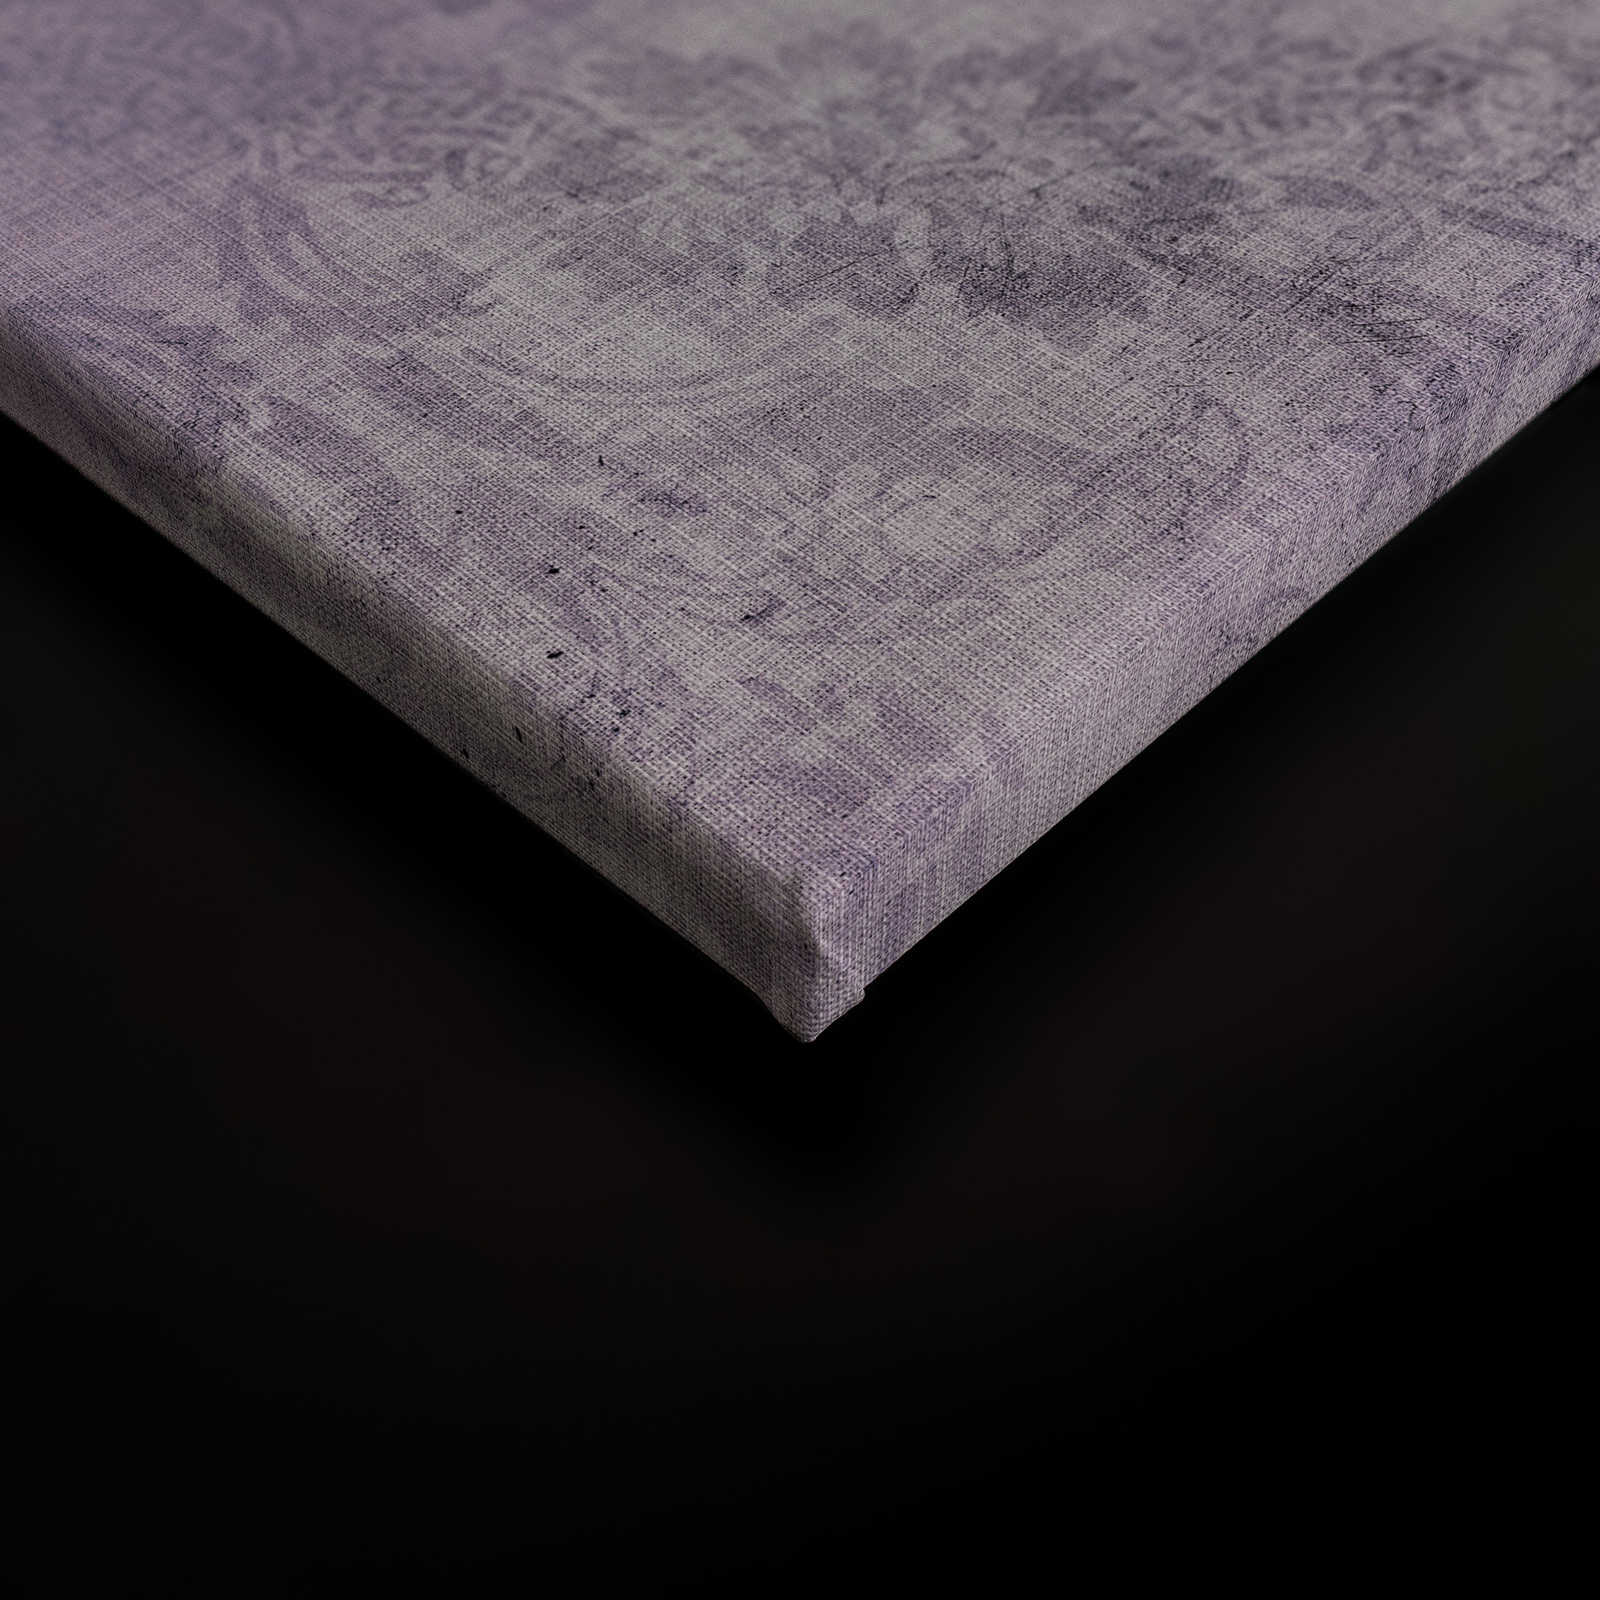             Pavone 3 - Quadro su tela con pavone colorato - Natura qualita consistenza in lino naturale - 0,90 m x 0,60 m
        